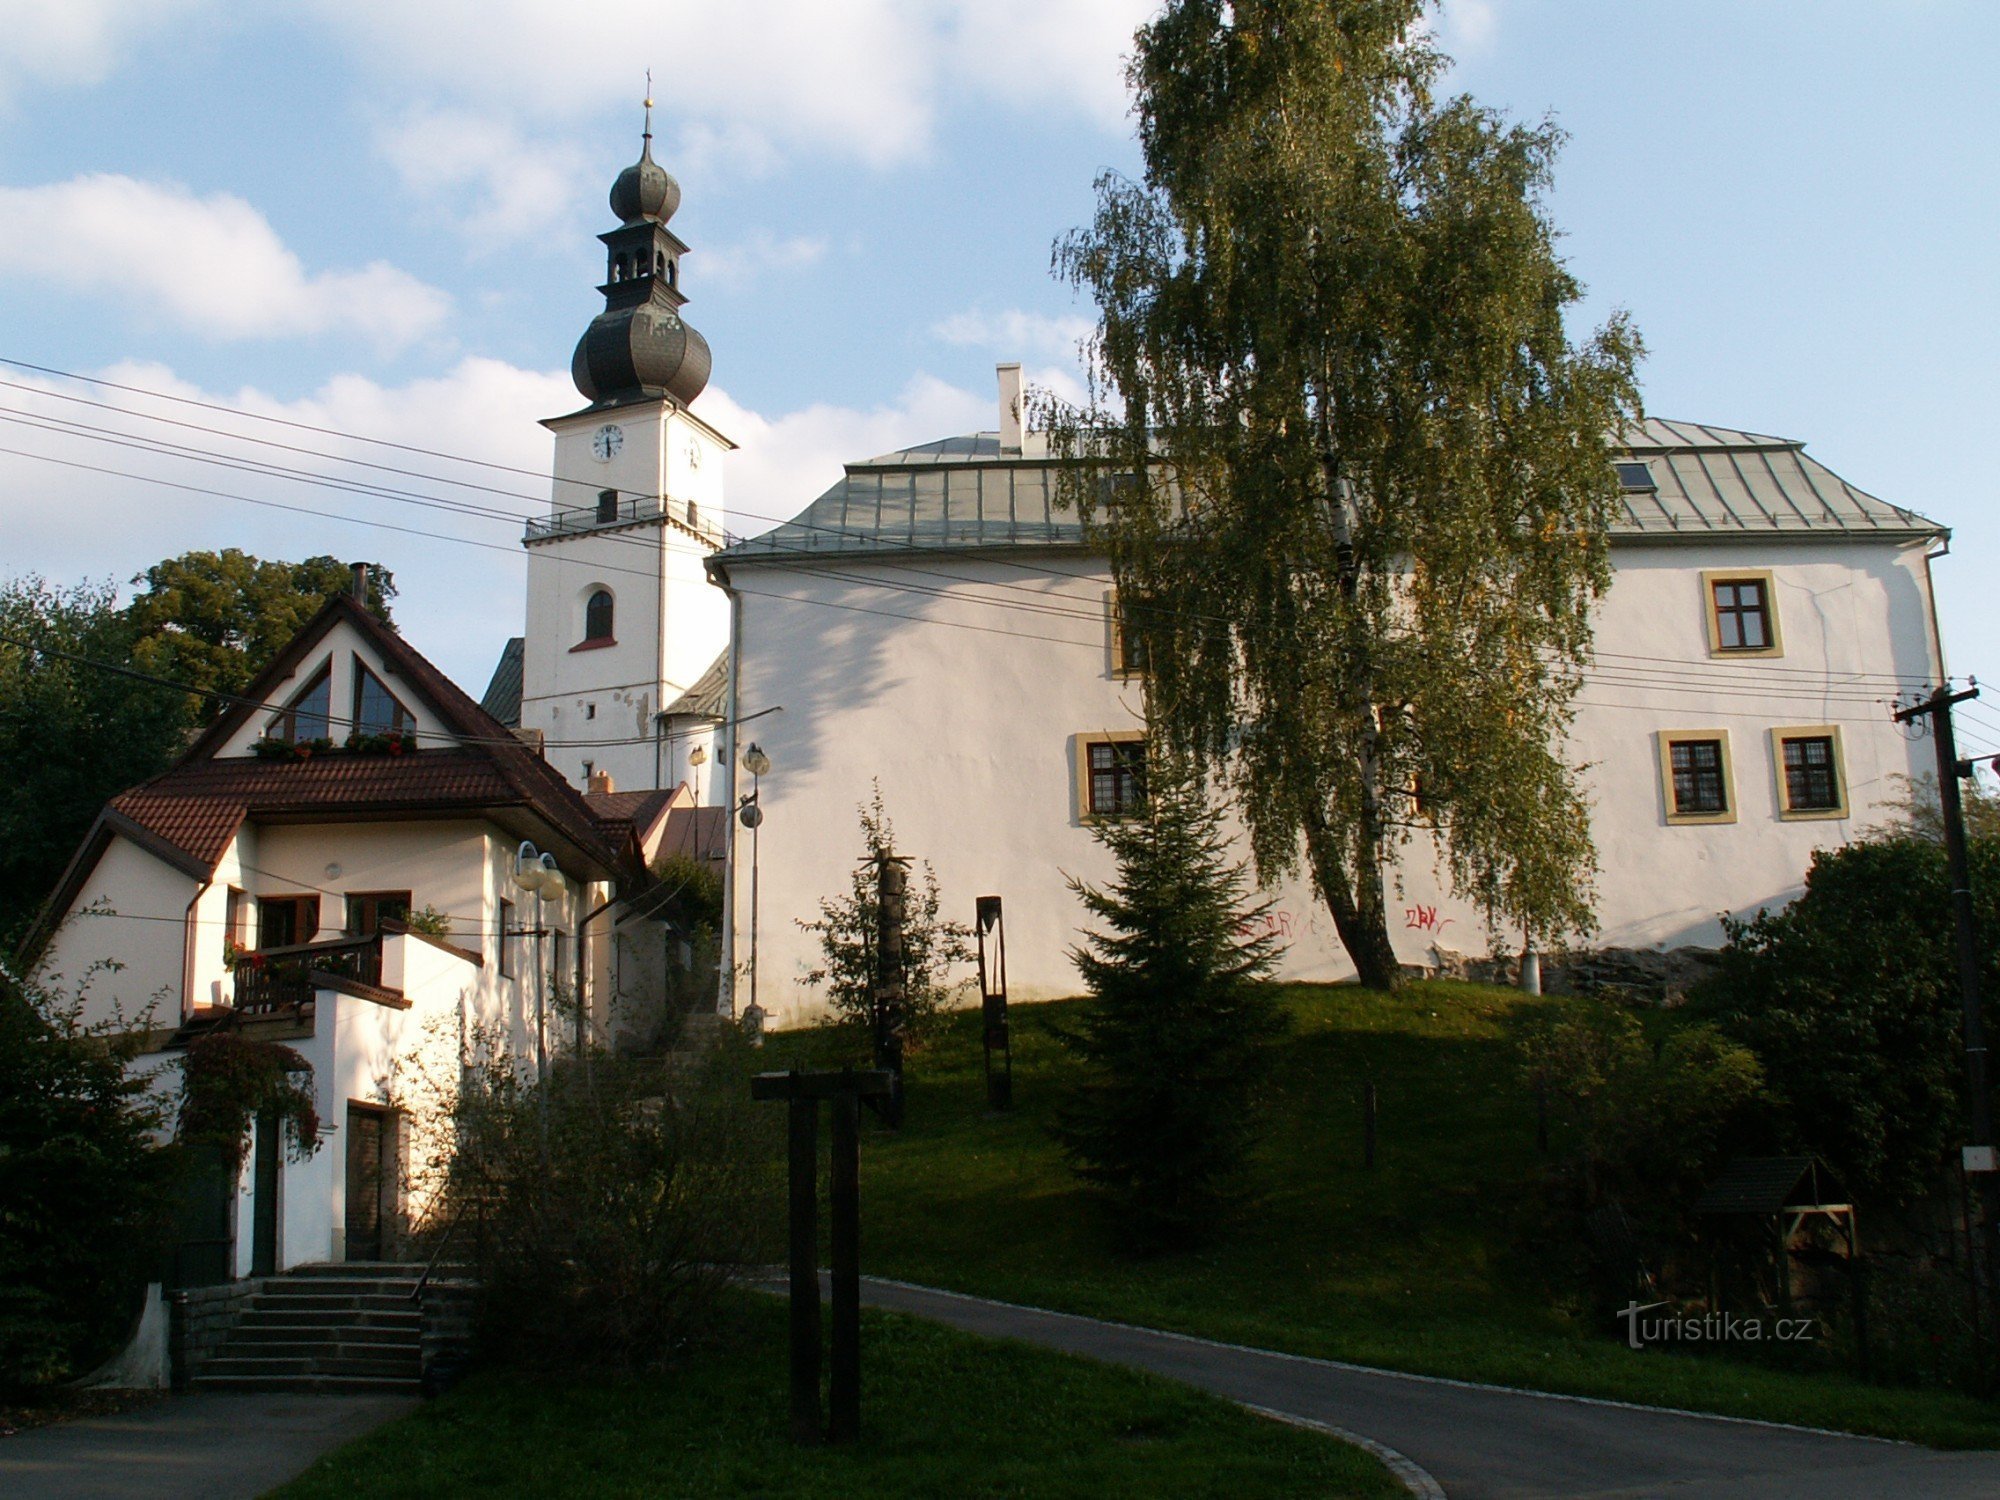 Το φρούριο από τον ποταμό Sázava